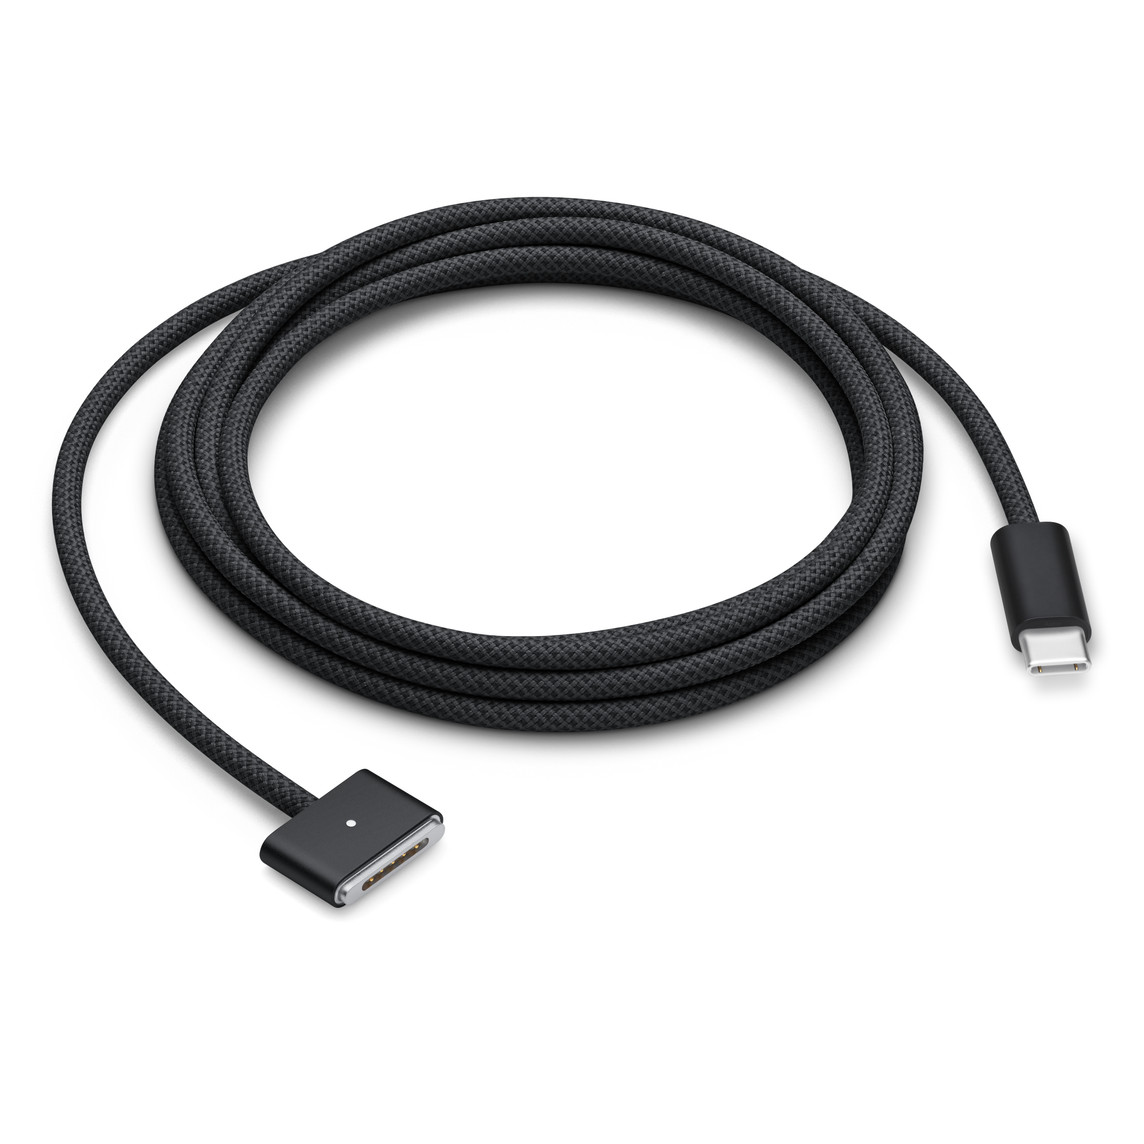 USB-C / MagSafe 3 kabel, 2metrový, smotaný, vesmírně černé opletení, magnetický MagSafe 3 konektor a USB-C konektor ve vesmírně černé.